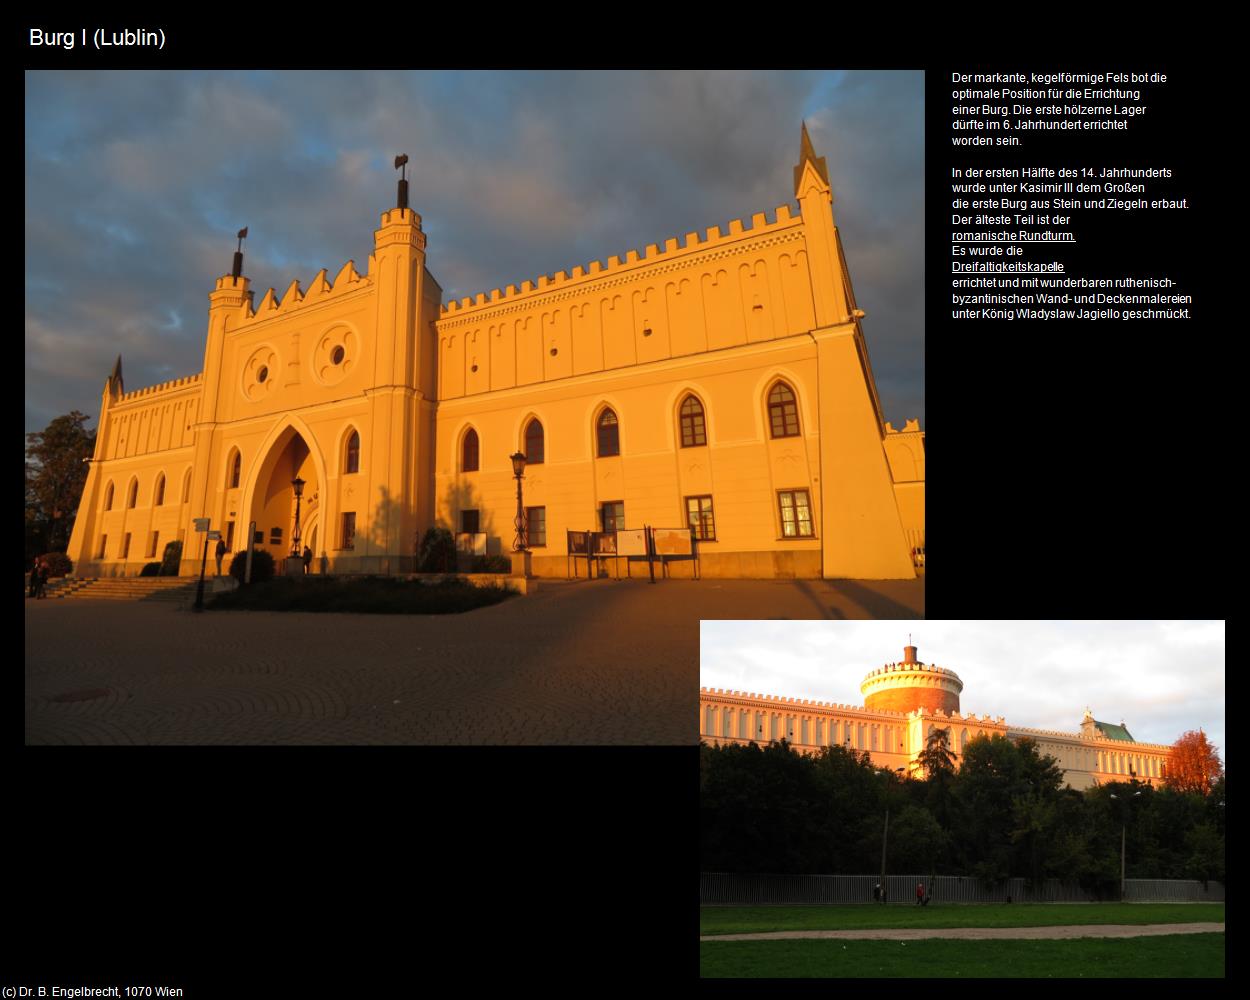 Burg I (Lublin) in POLEN-Galizien(c)B.Engelbrecht